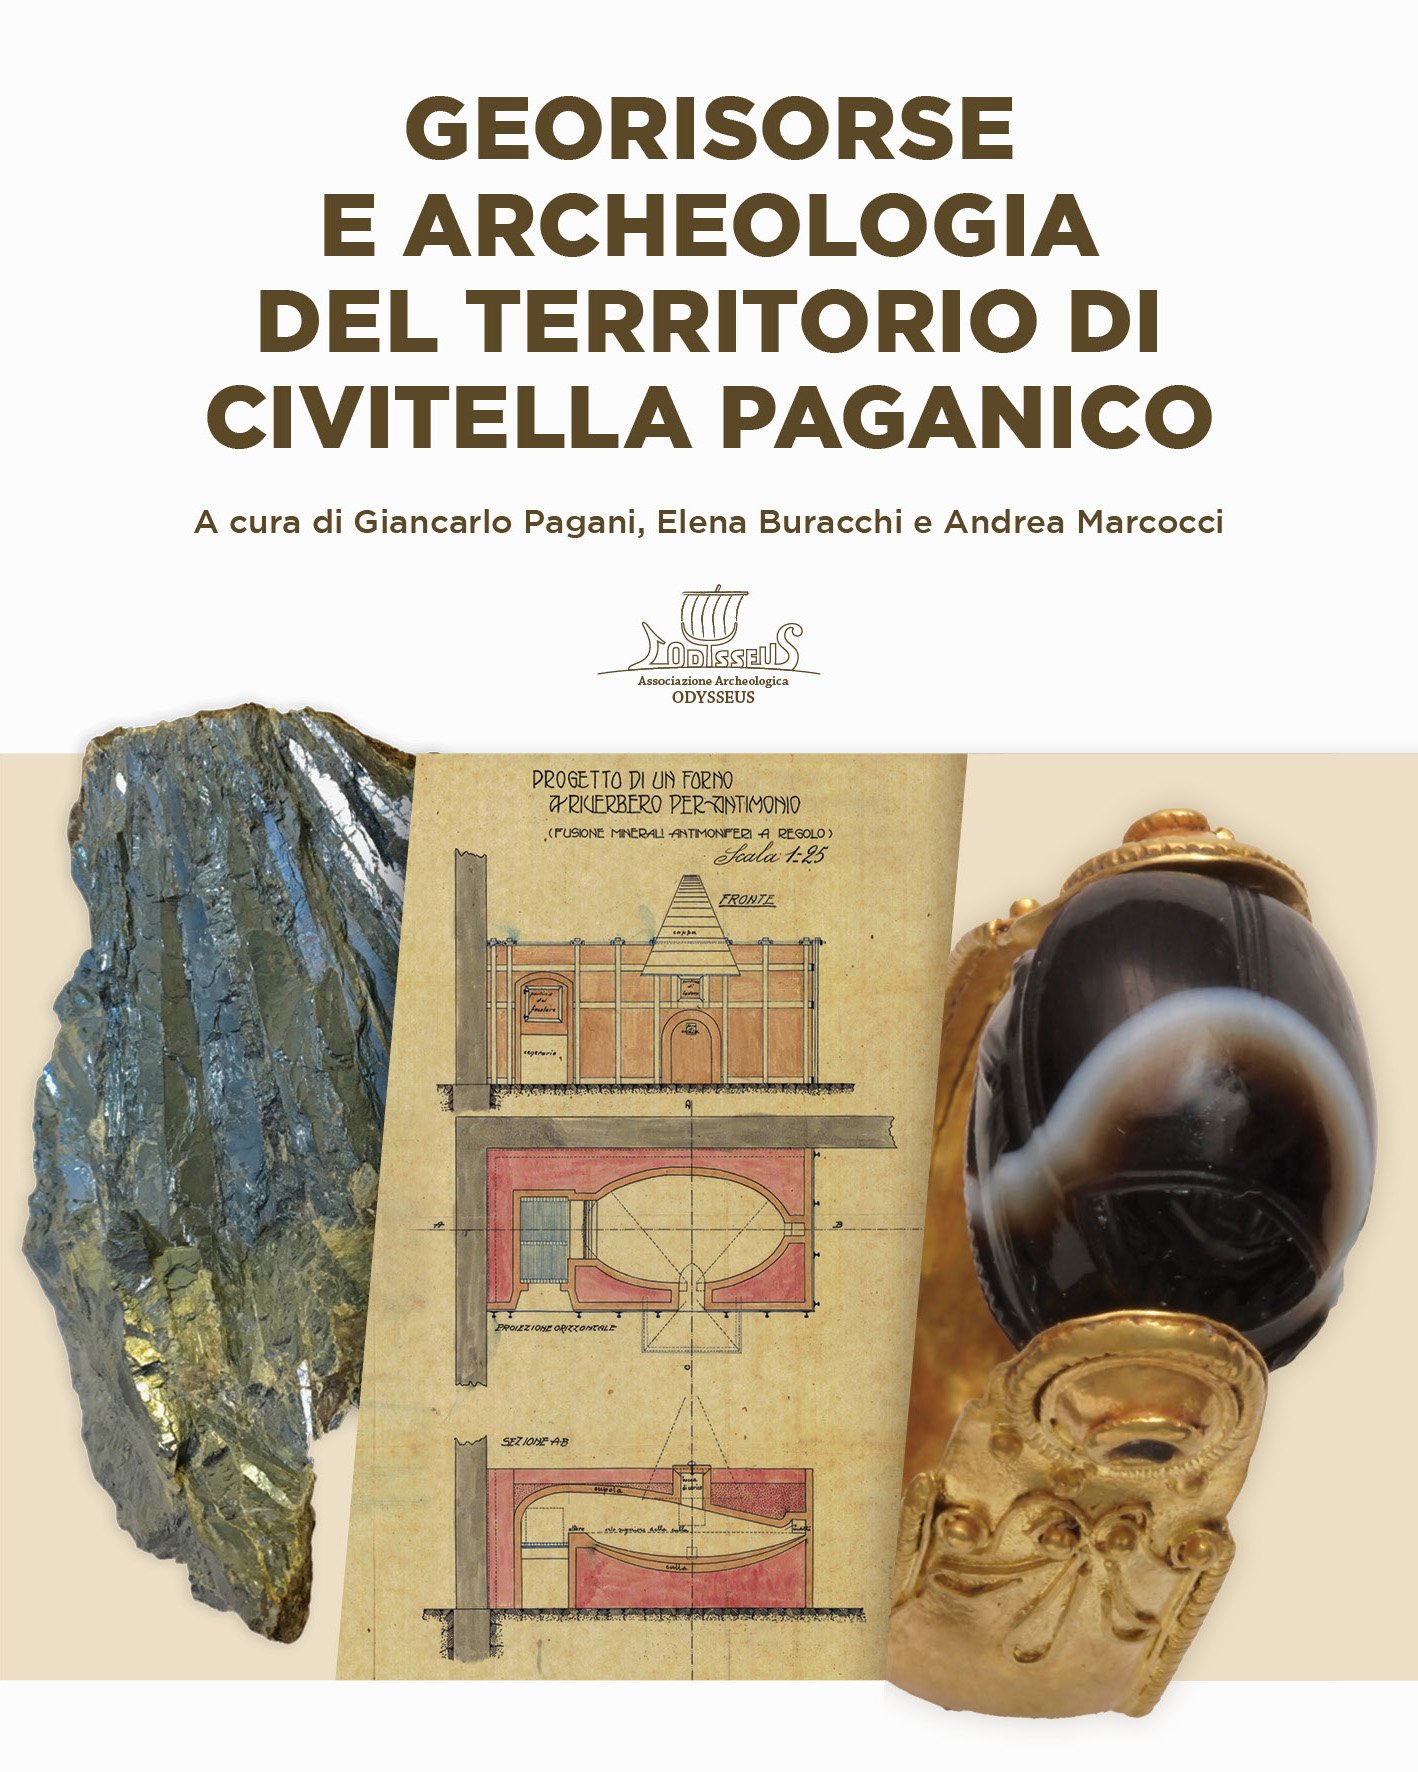 Copertina del volume "Georisorse e Archeologia del territorio di Civitella Paganico"